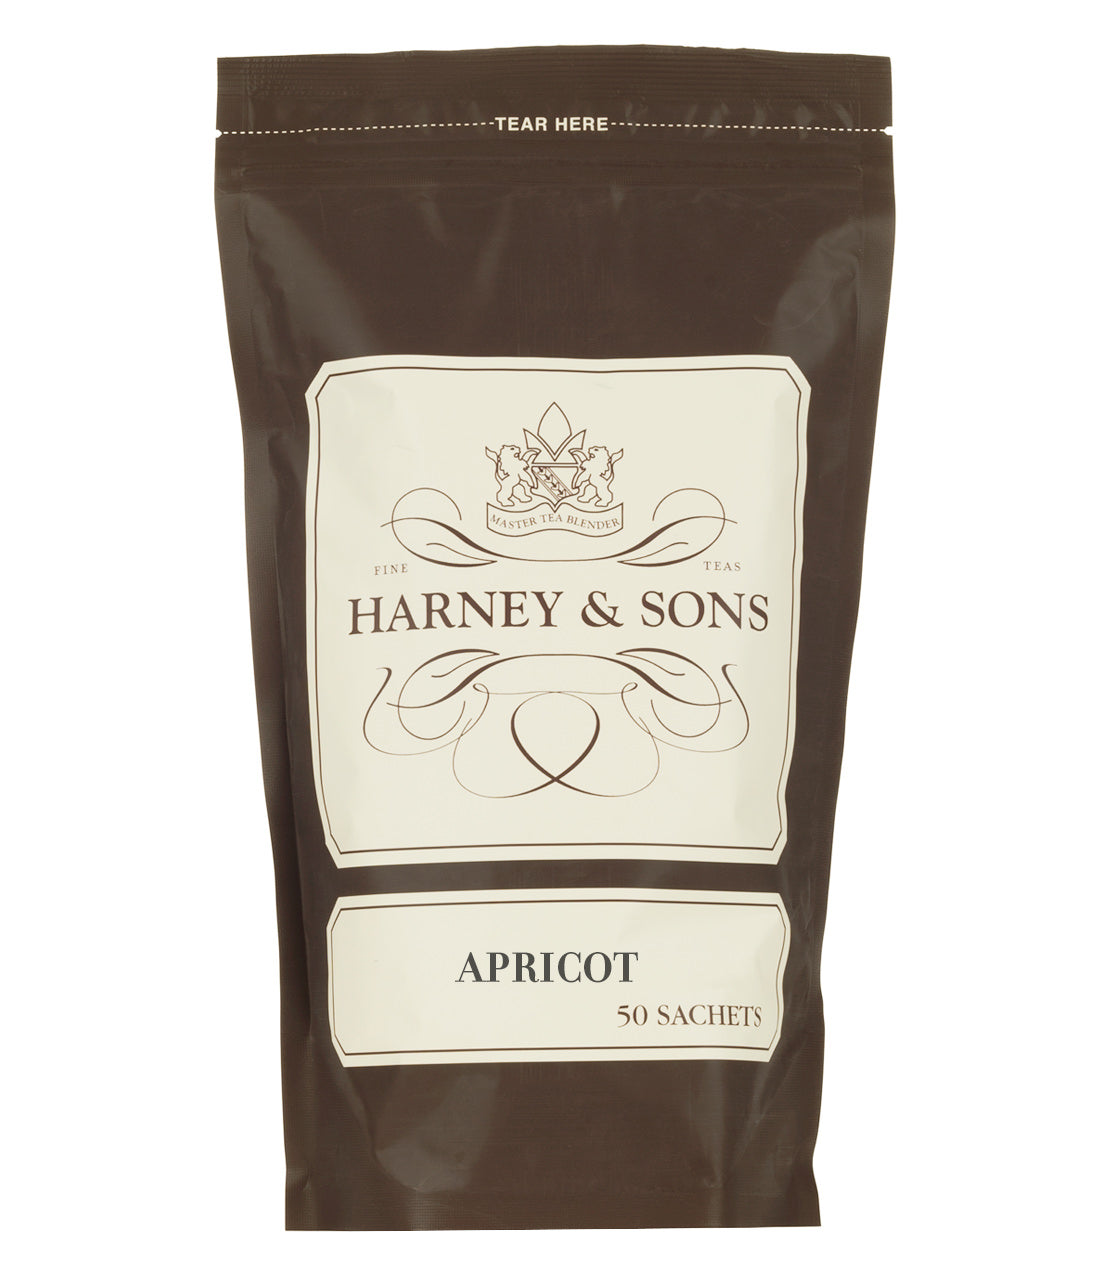 Apricot, Bag of 50 Sachets - Sachets Bag of 50 Sachets - Harney & Sons Fine Teas